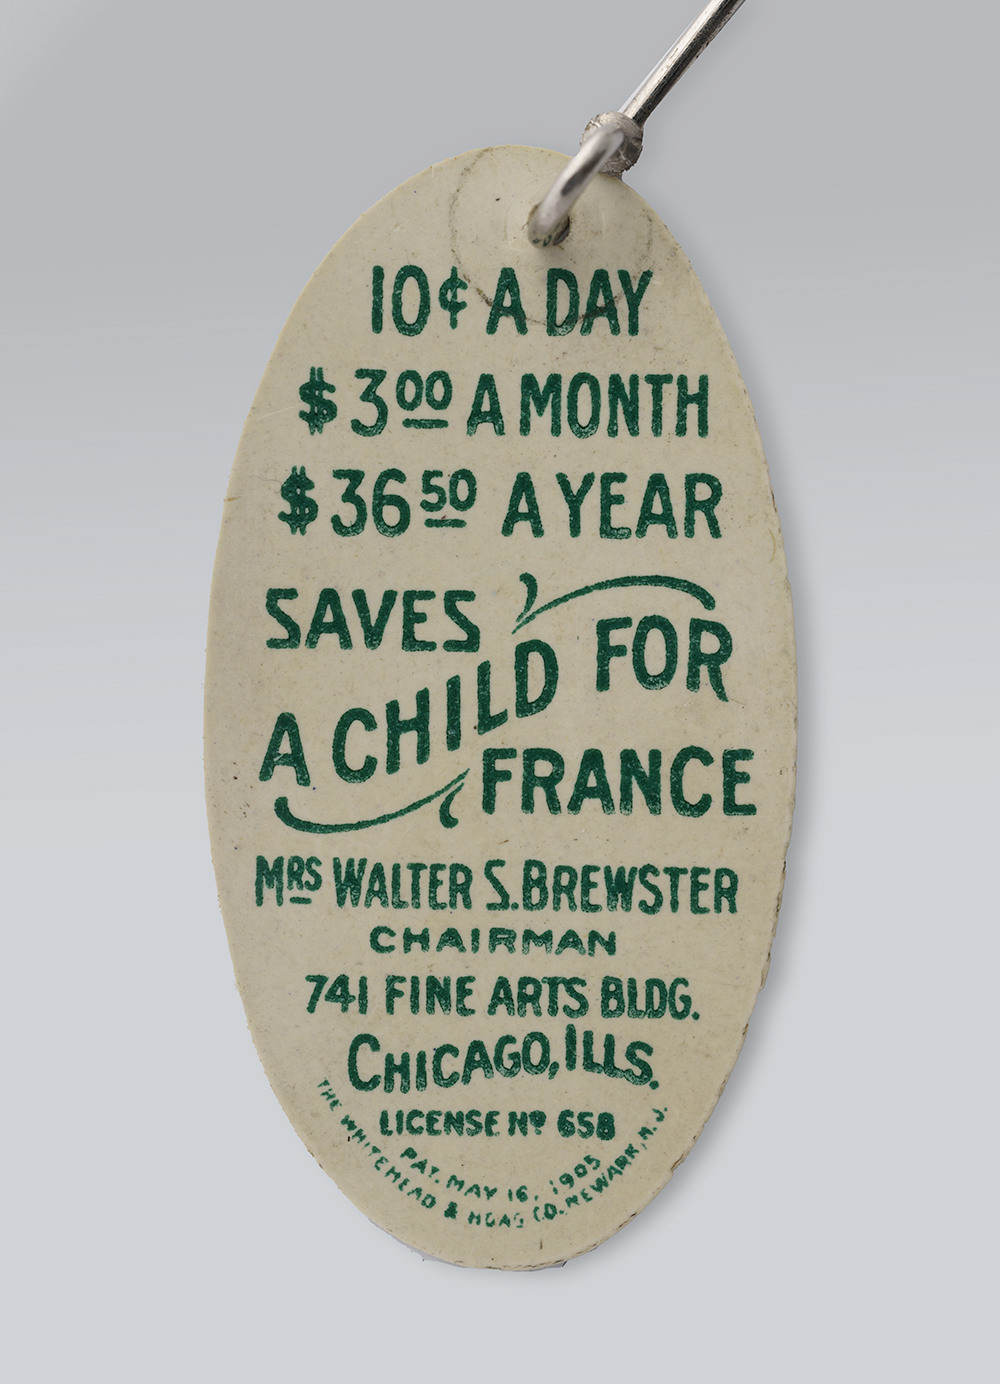 ဘဲဥပုံ ပင်၏ နောက်ကျော။ စာသား- 'တစ်နေ့ 10¢ / တစ်လ $3 / တစ်နှစ် $36.50 / ပြင်သစ်အတွက် ကလေးတစ်ယောက်ကို ကယ်တင်သည်'